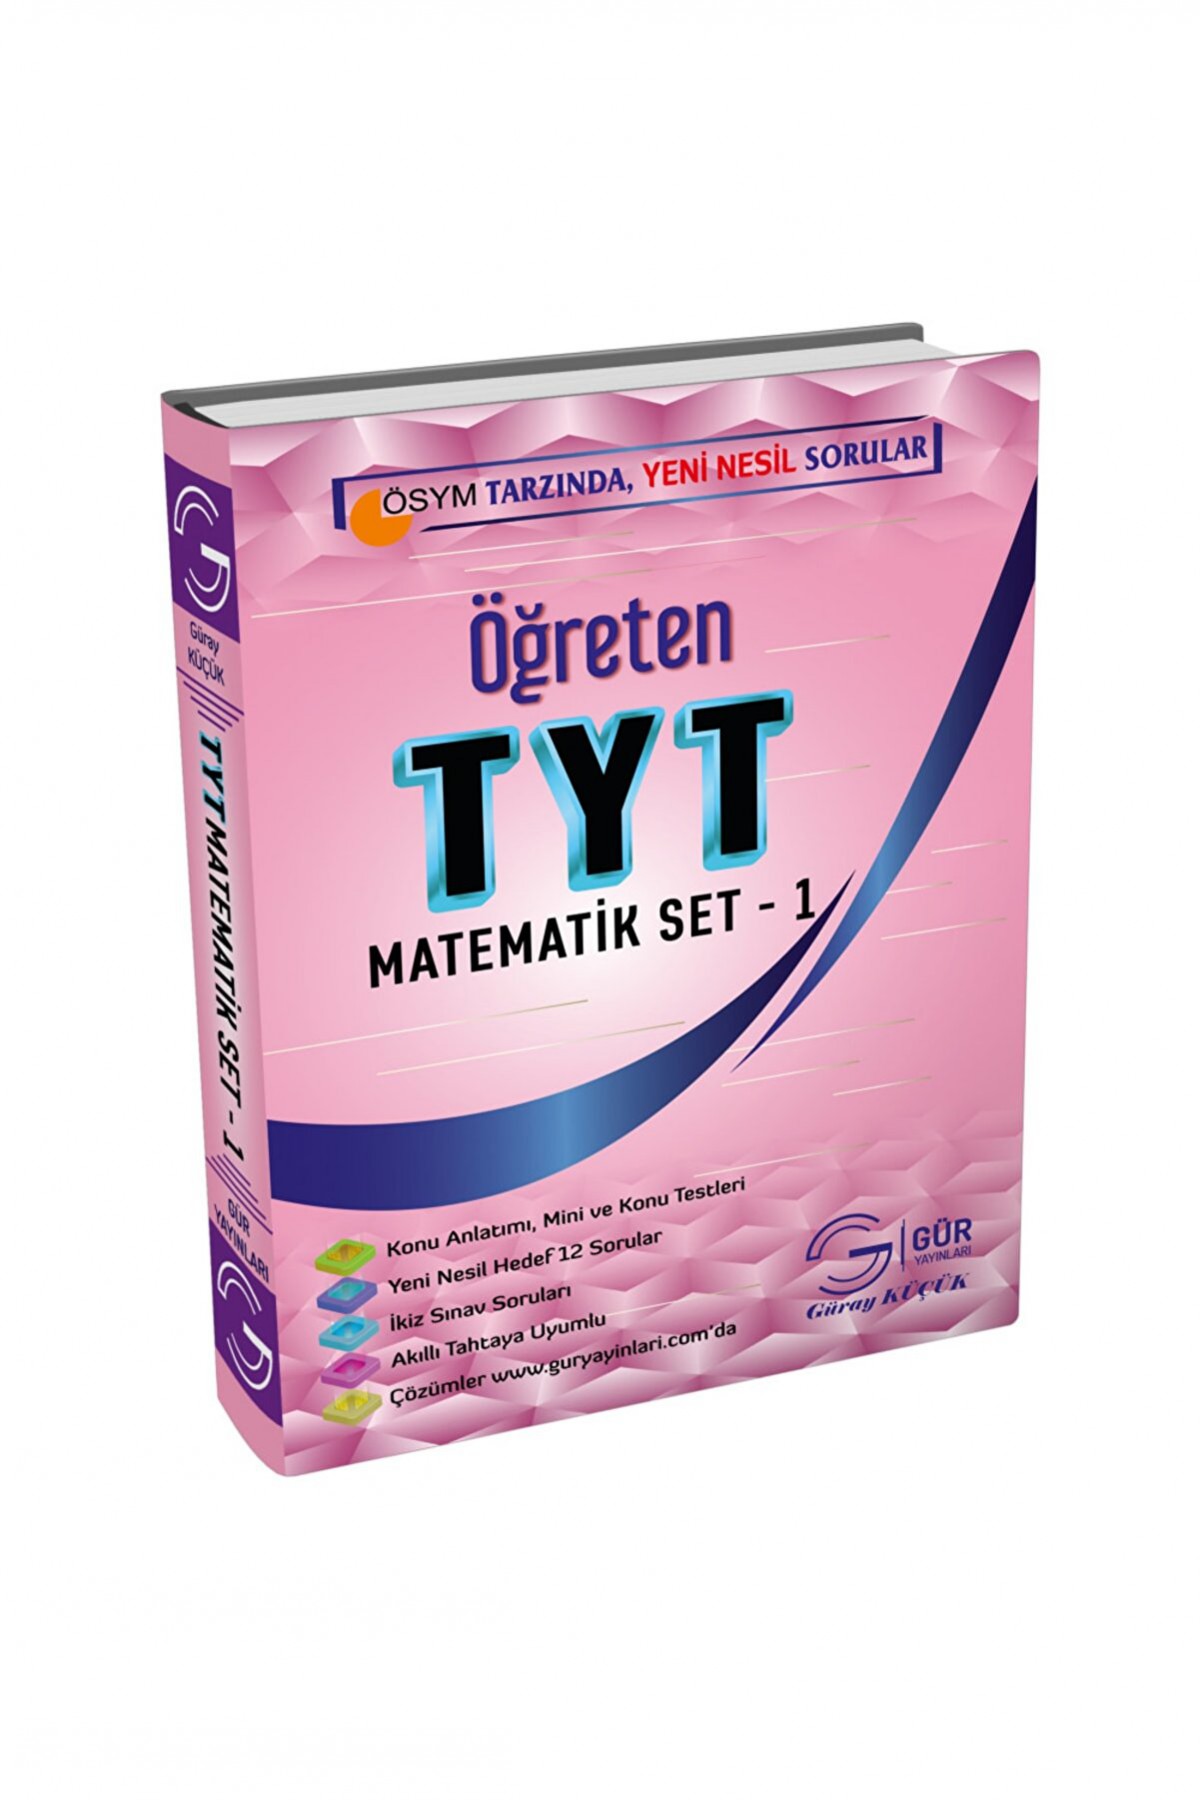 Gür Yayınları Öğreten Tyt Matematik Set - 1